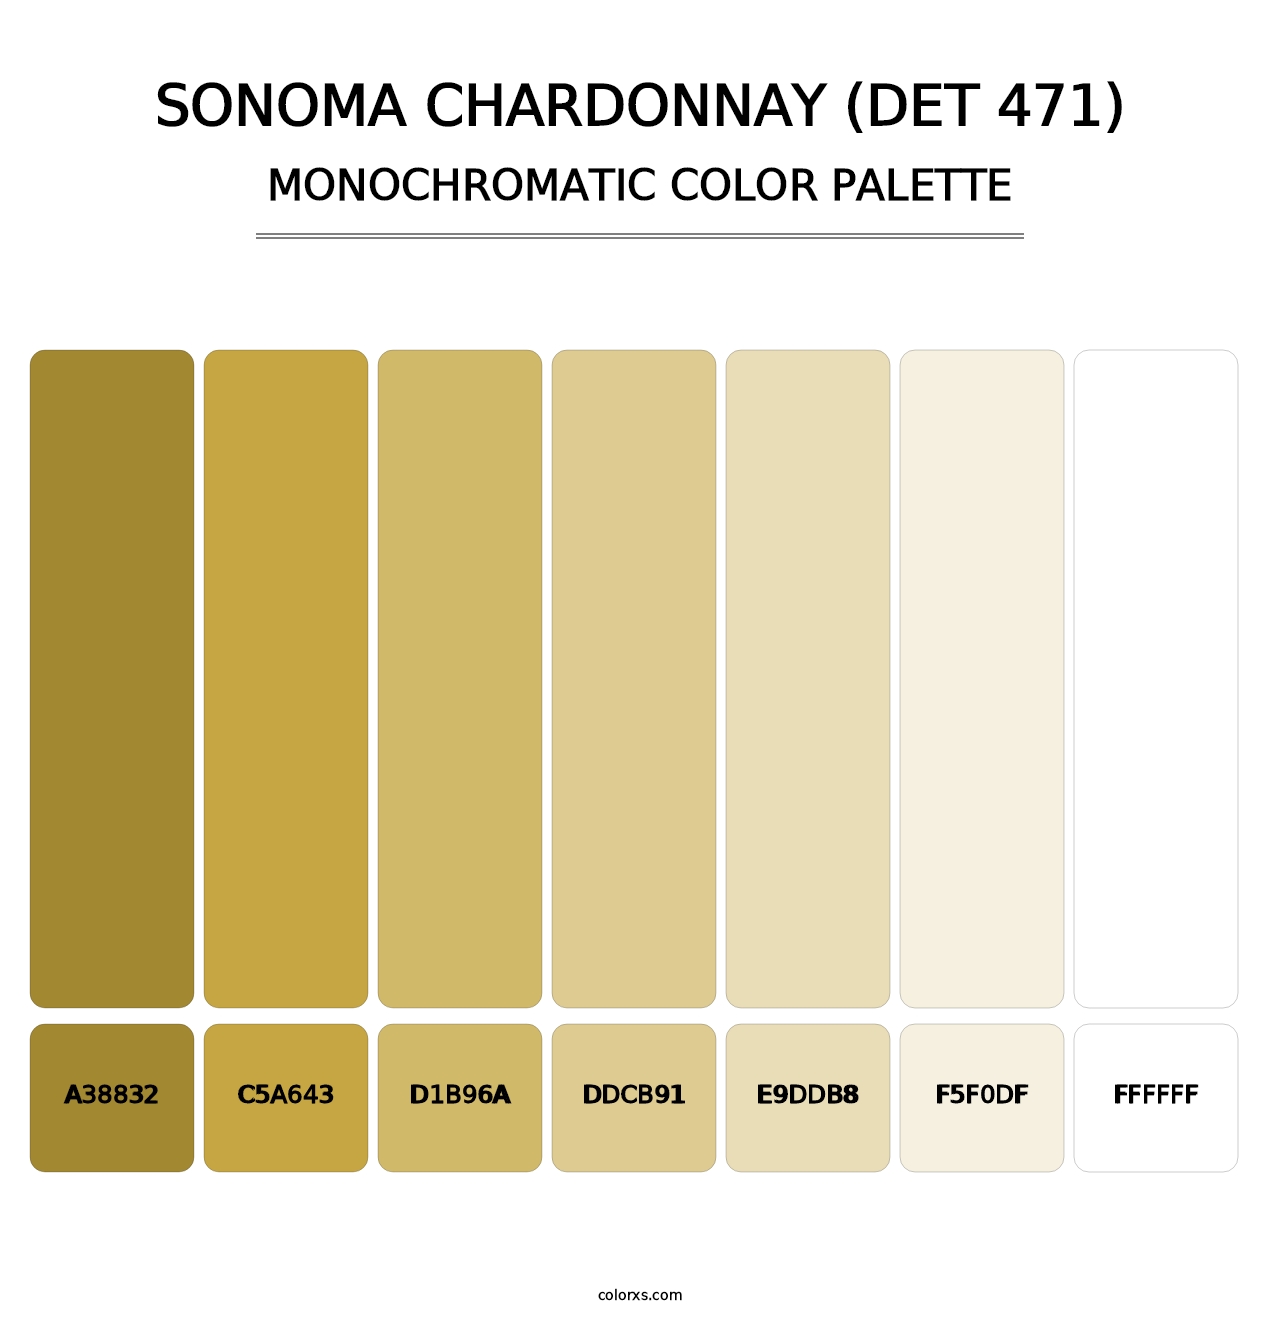 Sonoma Chardonnay (DET 471) - Monochromatic Color Palette